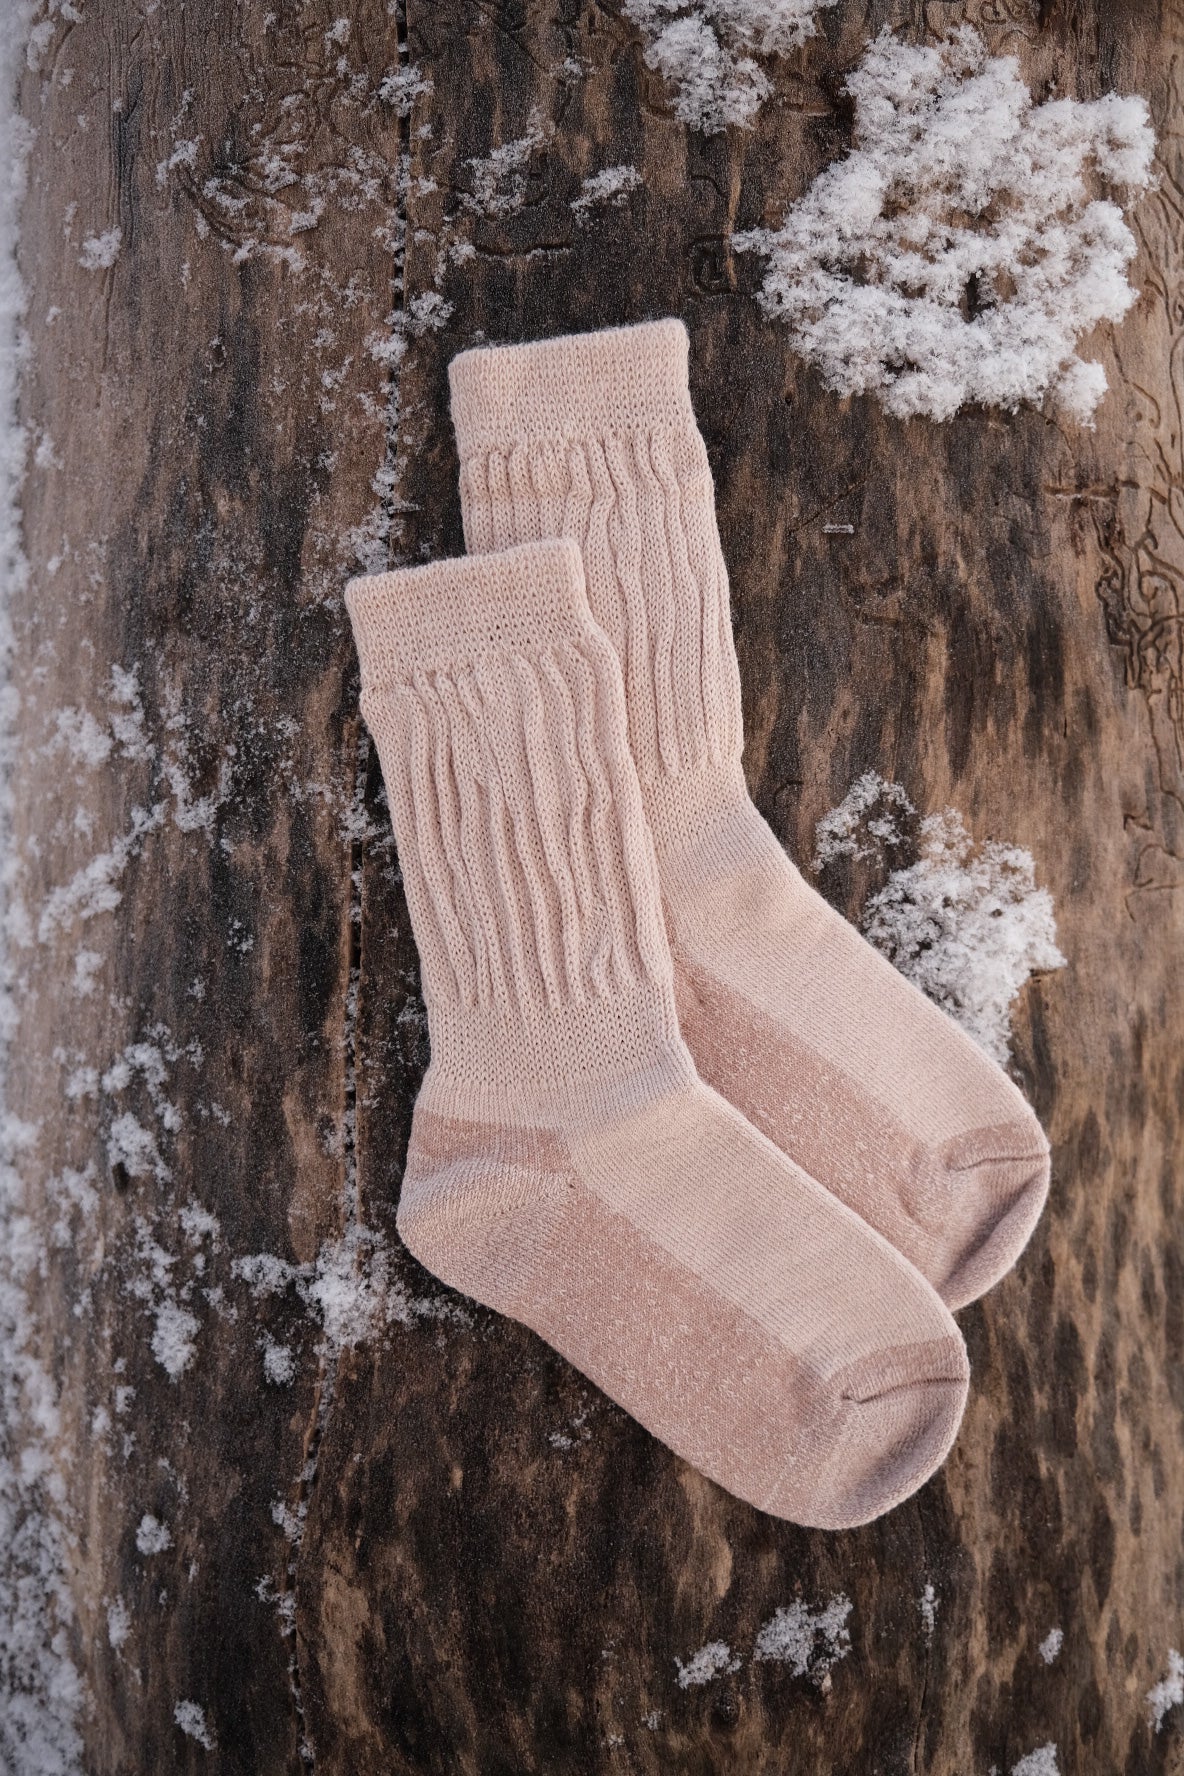 The Meråker sock